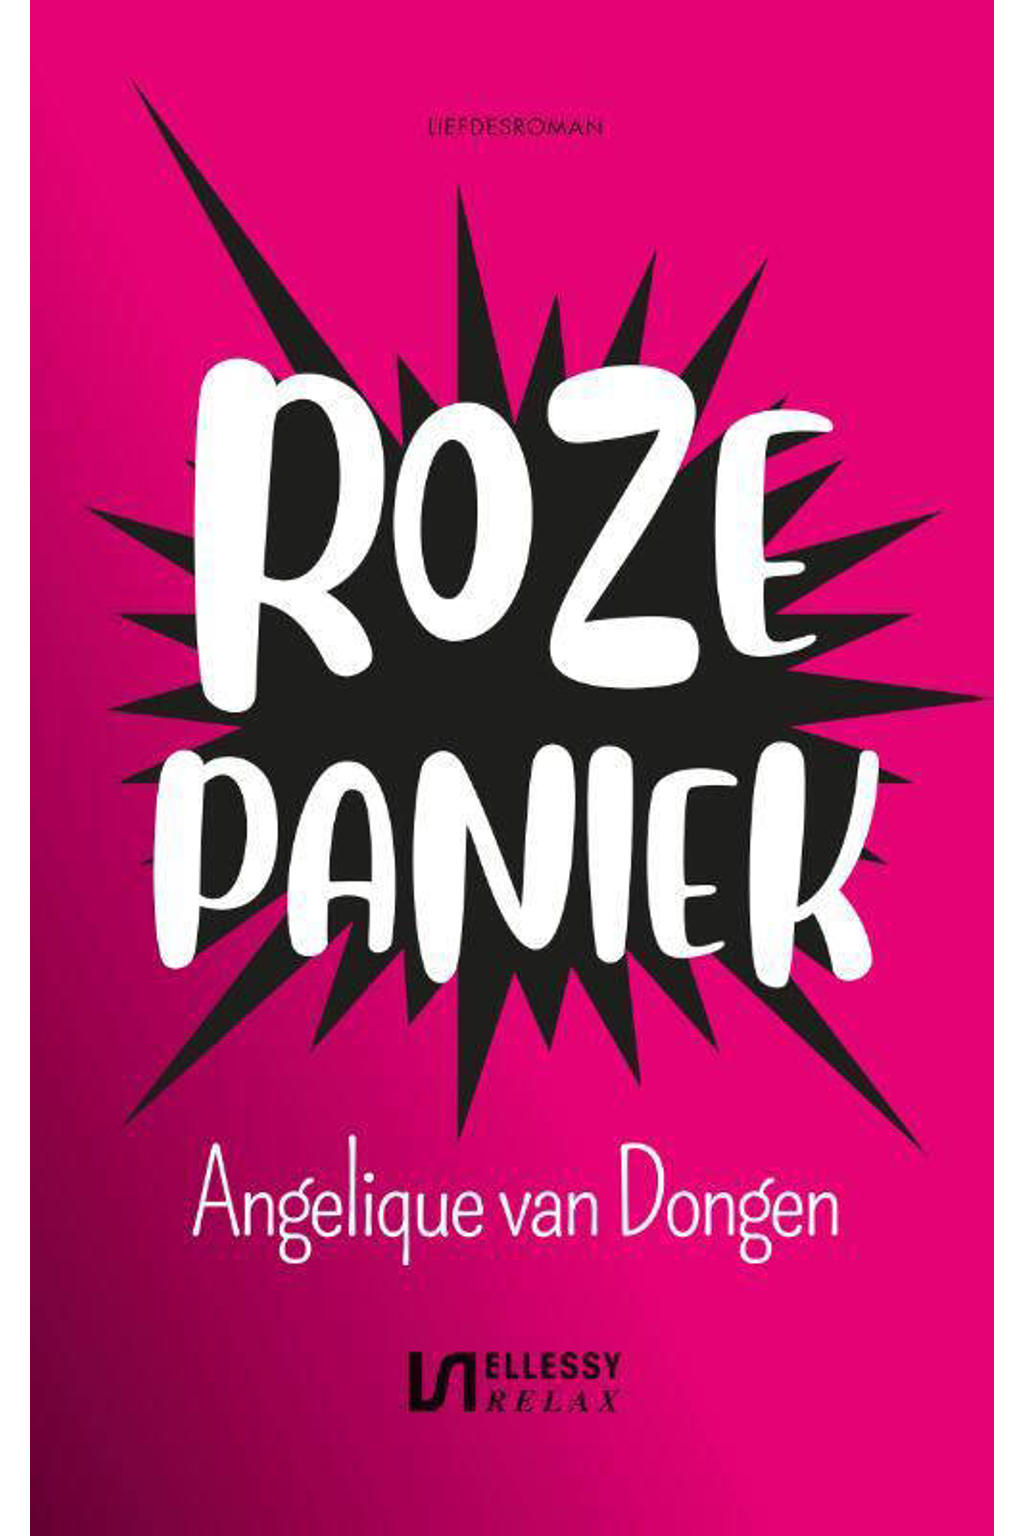 Roze paniek - Angelique van Dongen